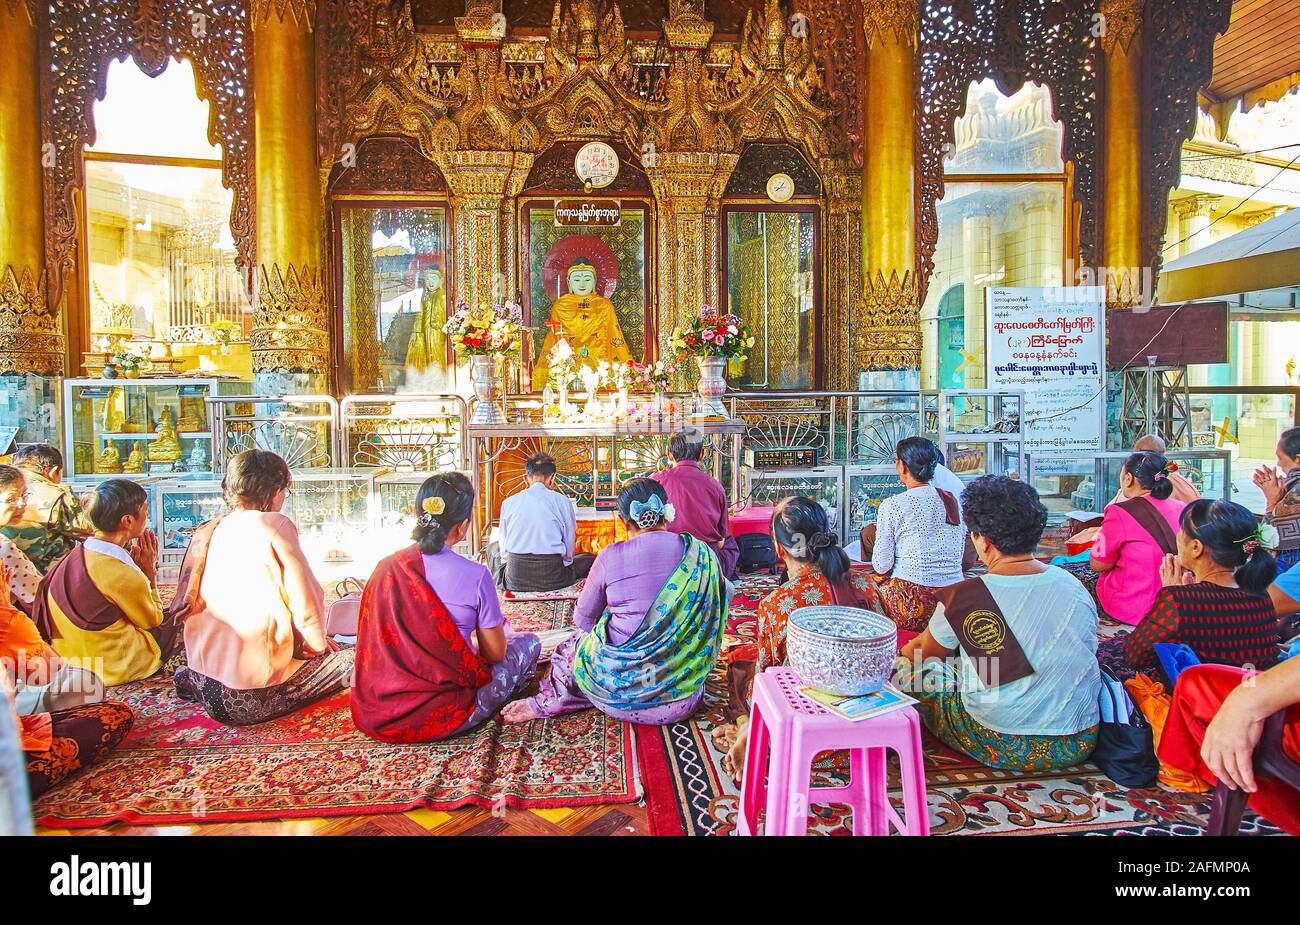 YANGON, MYANMAR - Februar 17, 2018: Die Gruppe der buddhistischen Anhänger auf das Gebet in Bild Haus der Sule Pagode, sitzen auf dem Boden vor der Budd Stockfoto